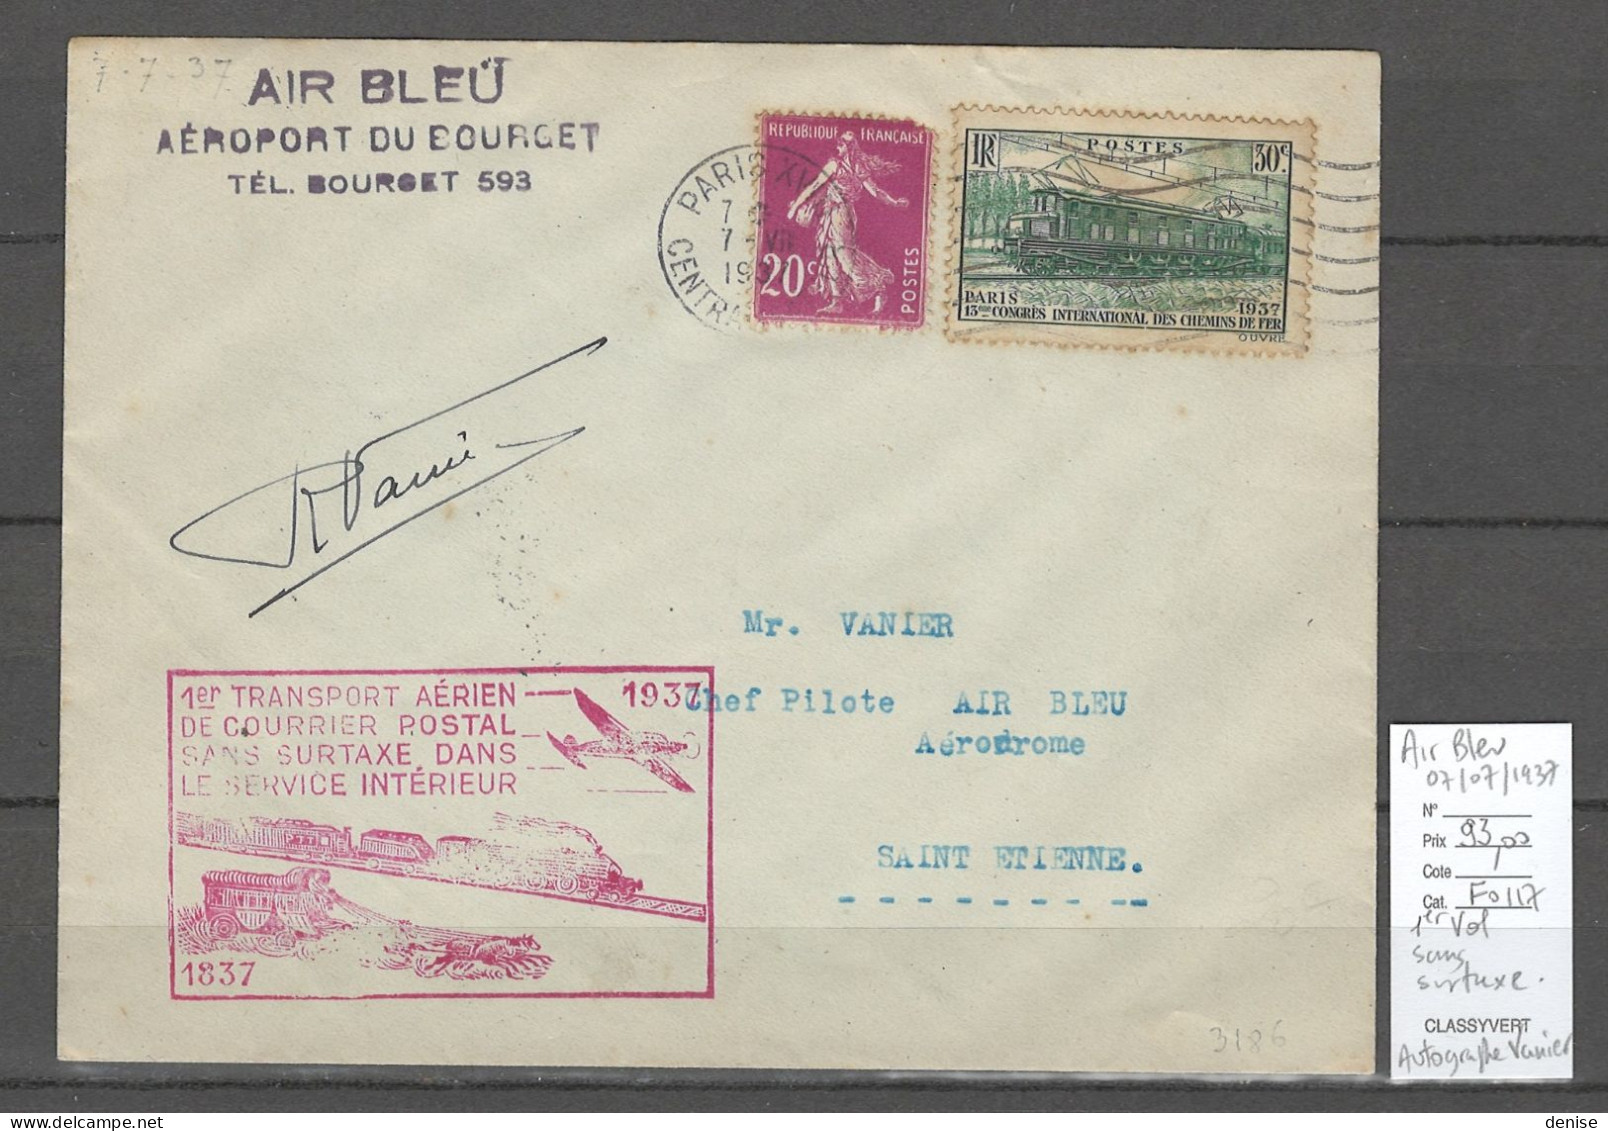 France - 1er Service Postal SANS SURTAXE - AIR BLEU - AUTOGRAPHE DU PILOTE VANIER - 1937 - 1927-1959 Briefe & Dokumente